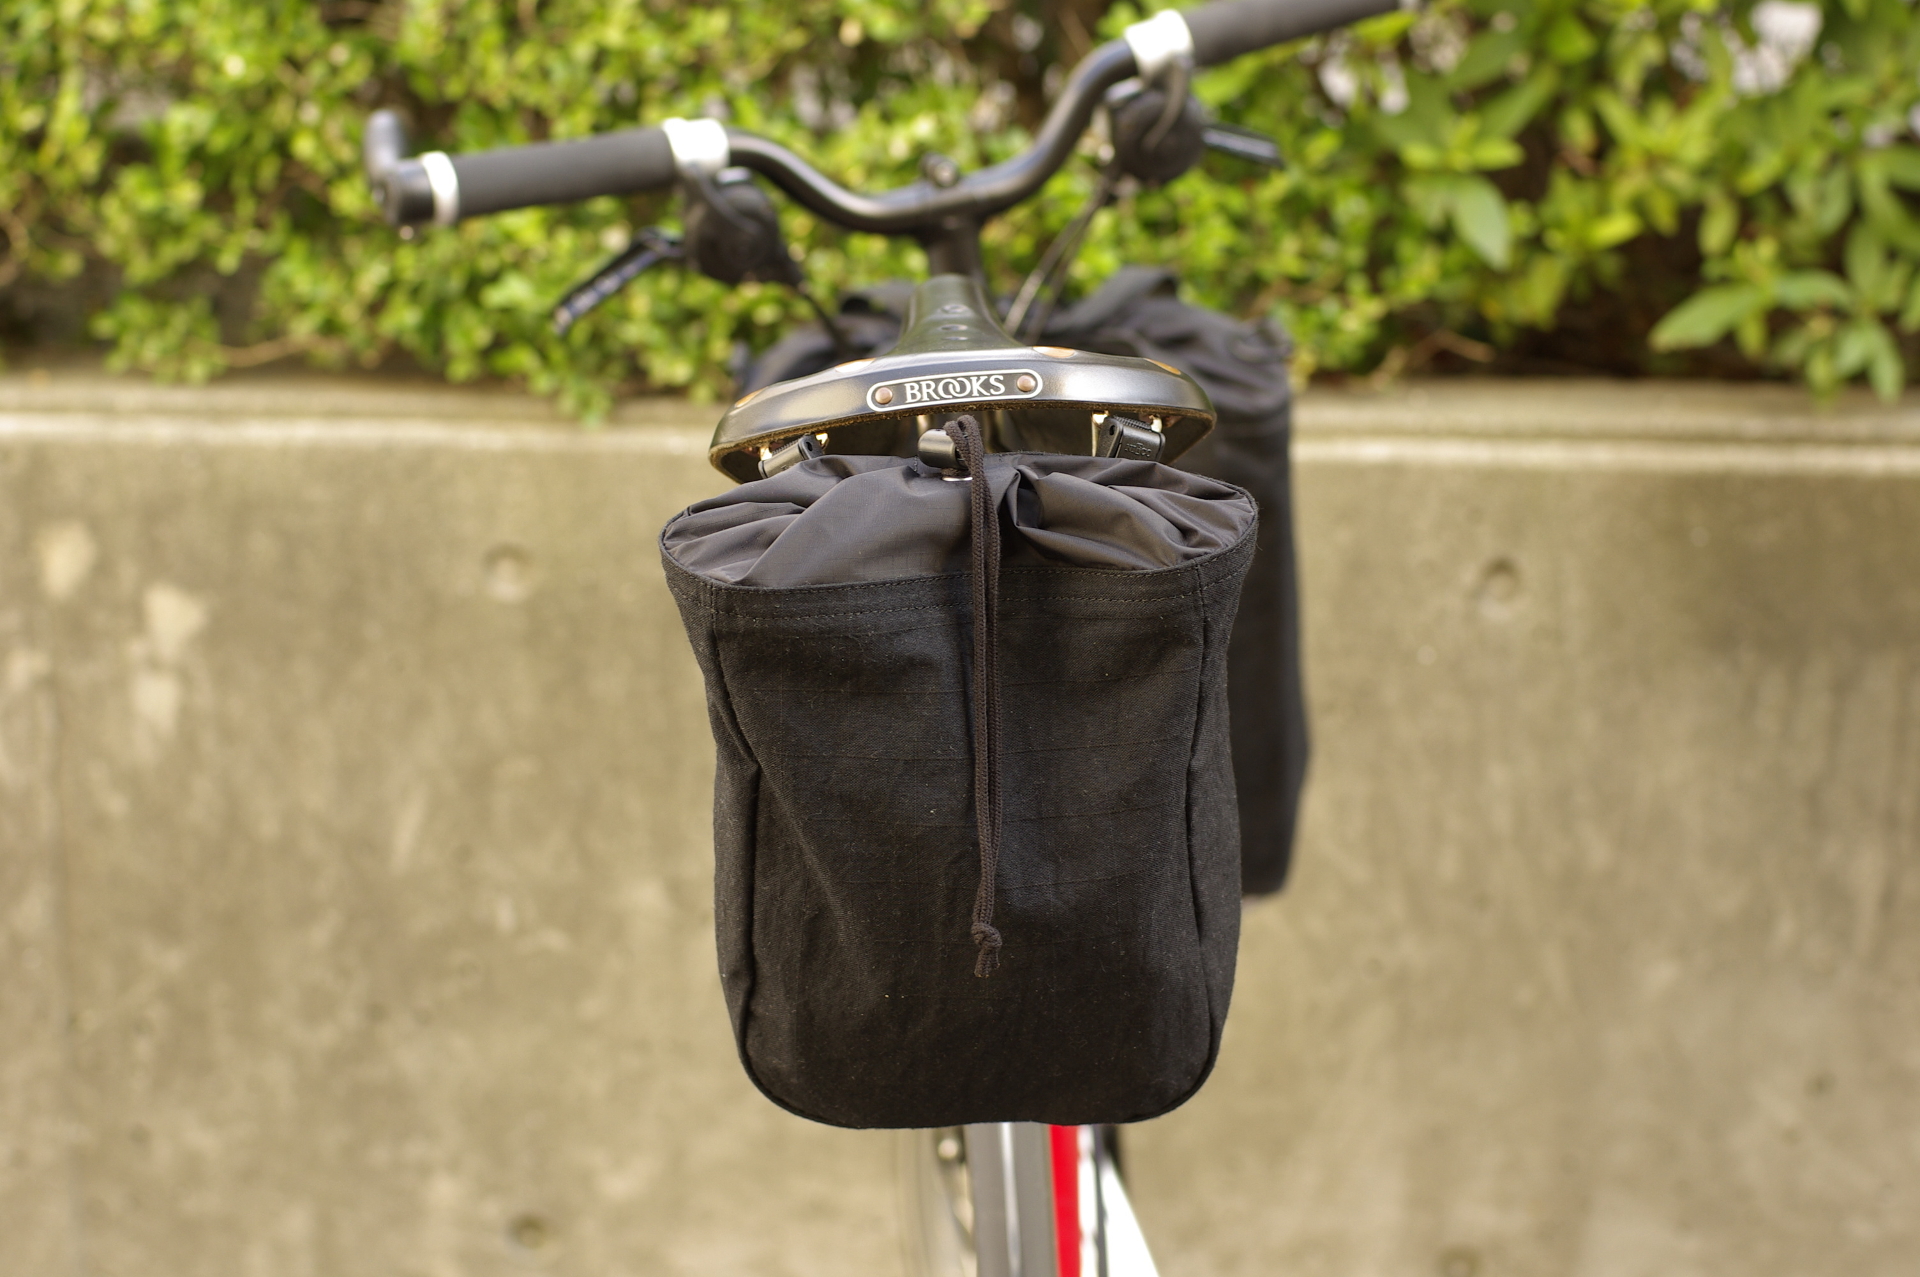 KATOKABAN × Bici Termini サドルバッグ 初回入荷です。 – Bici Termini